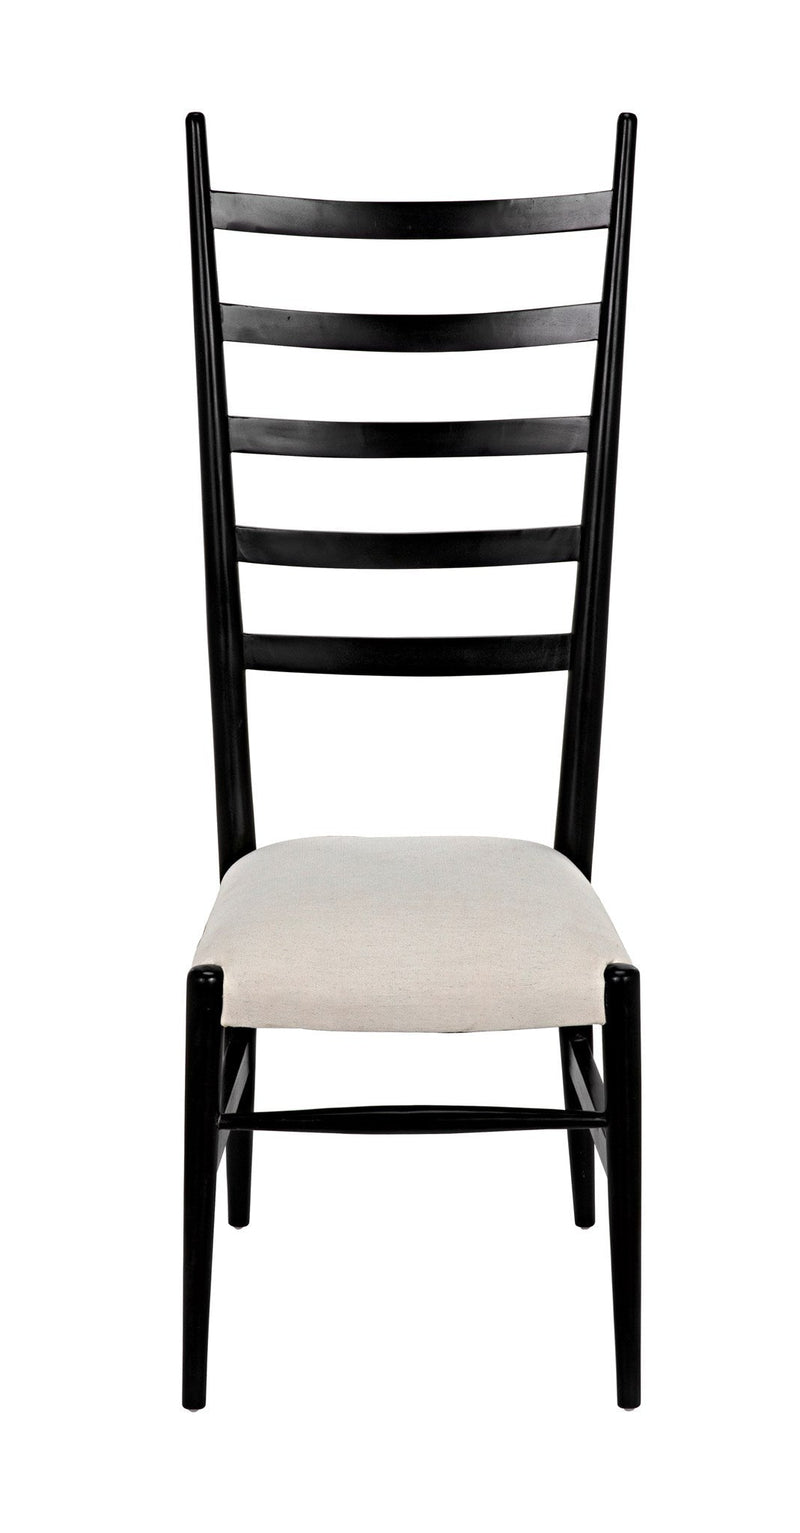 Ladder Wood Black Armless Chair-Club Chairs-Noir-LOOMLAN